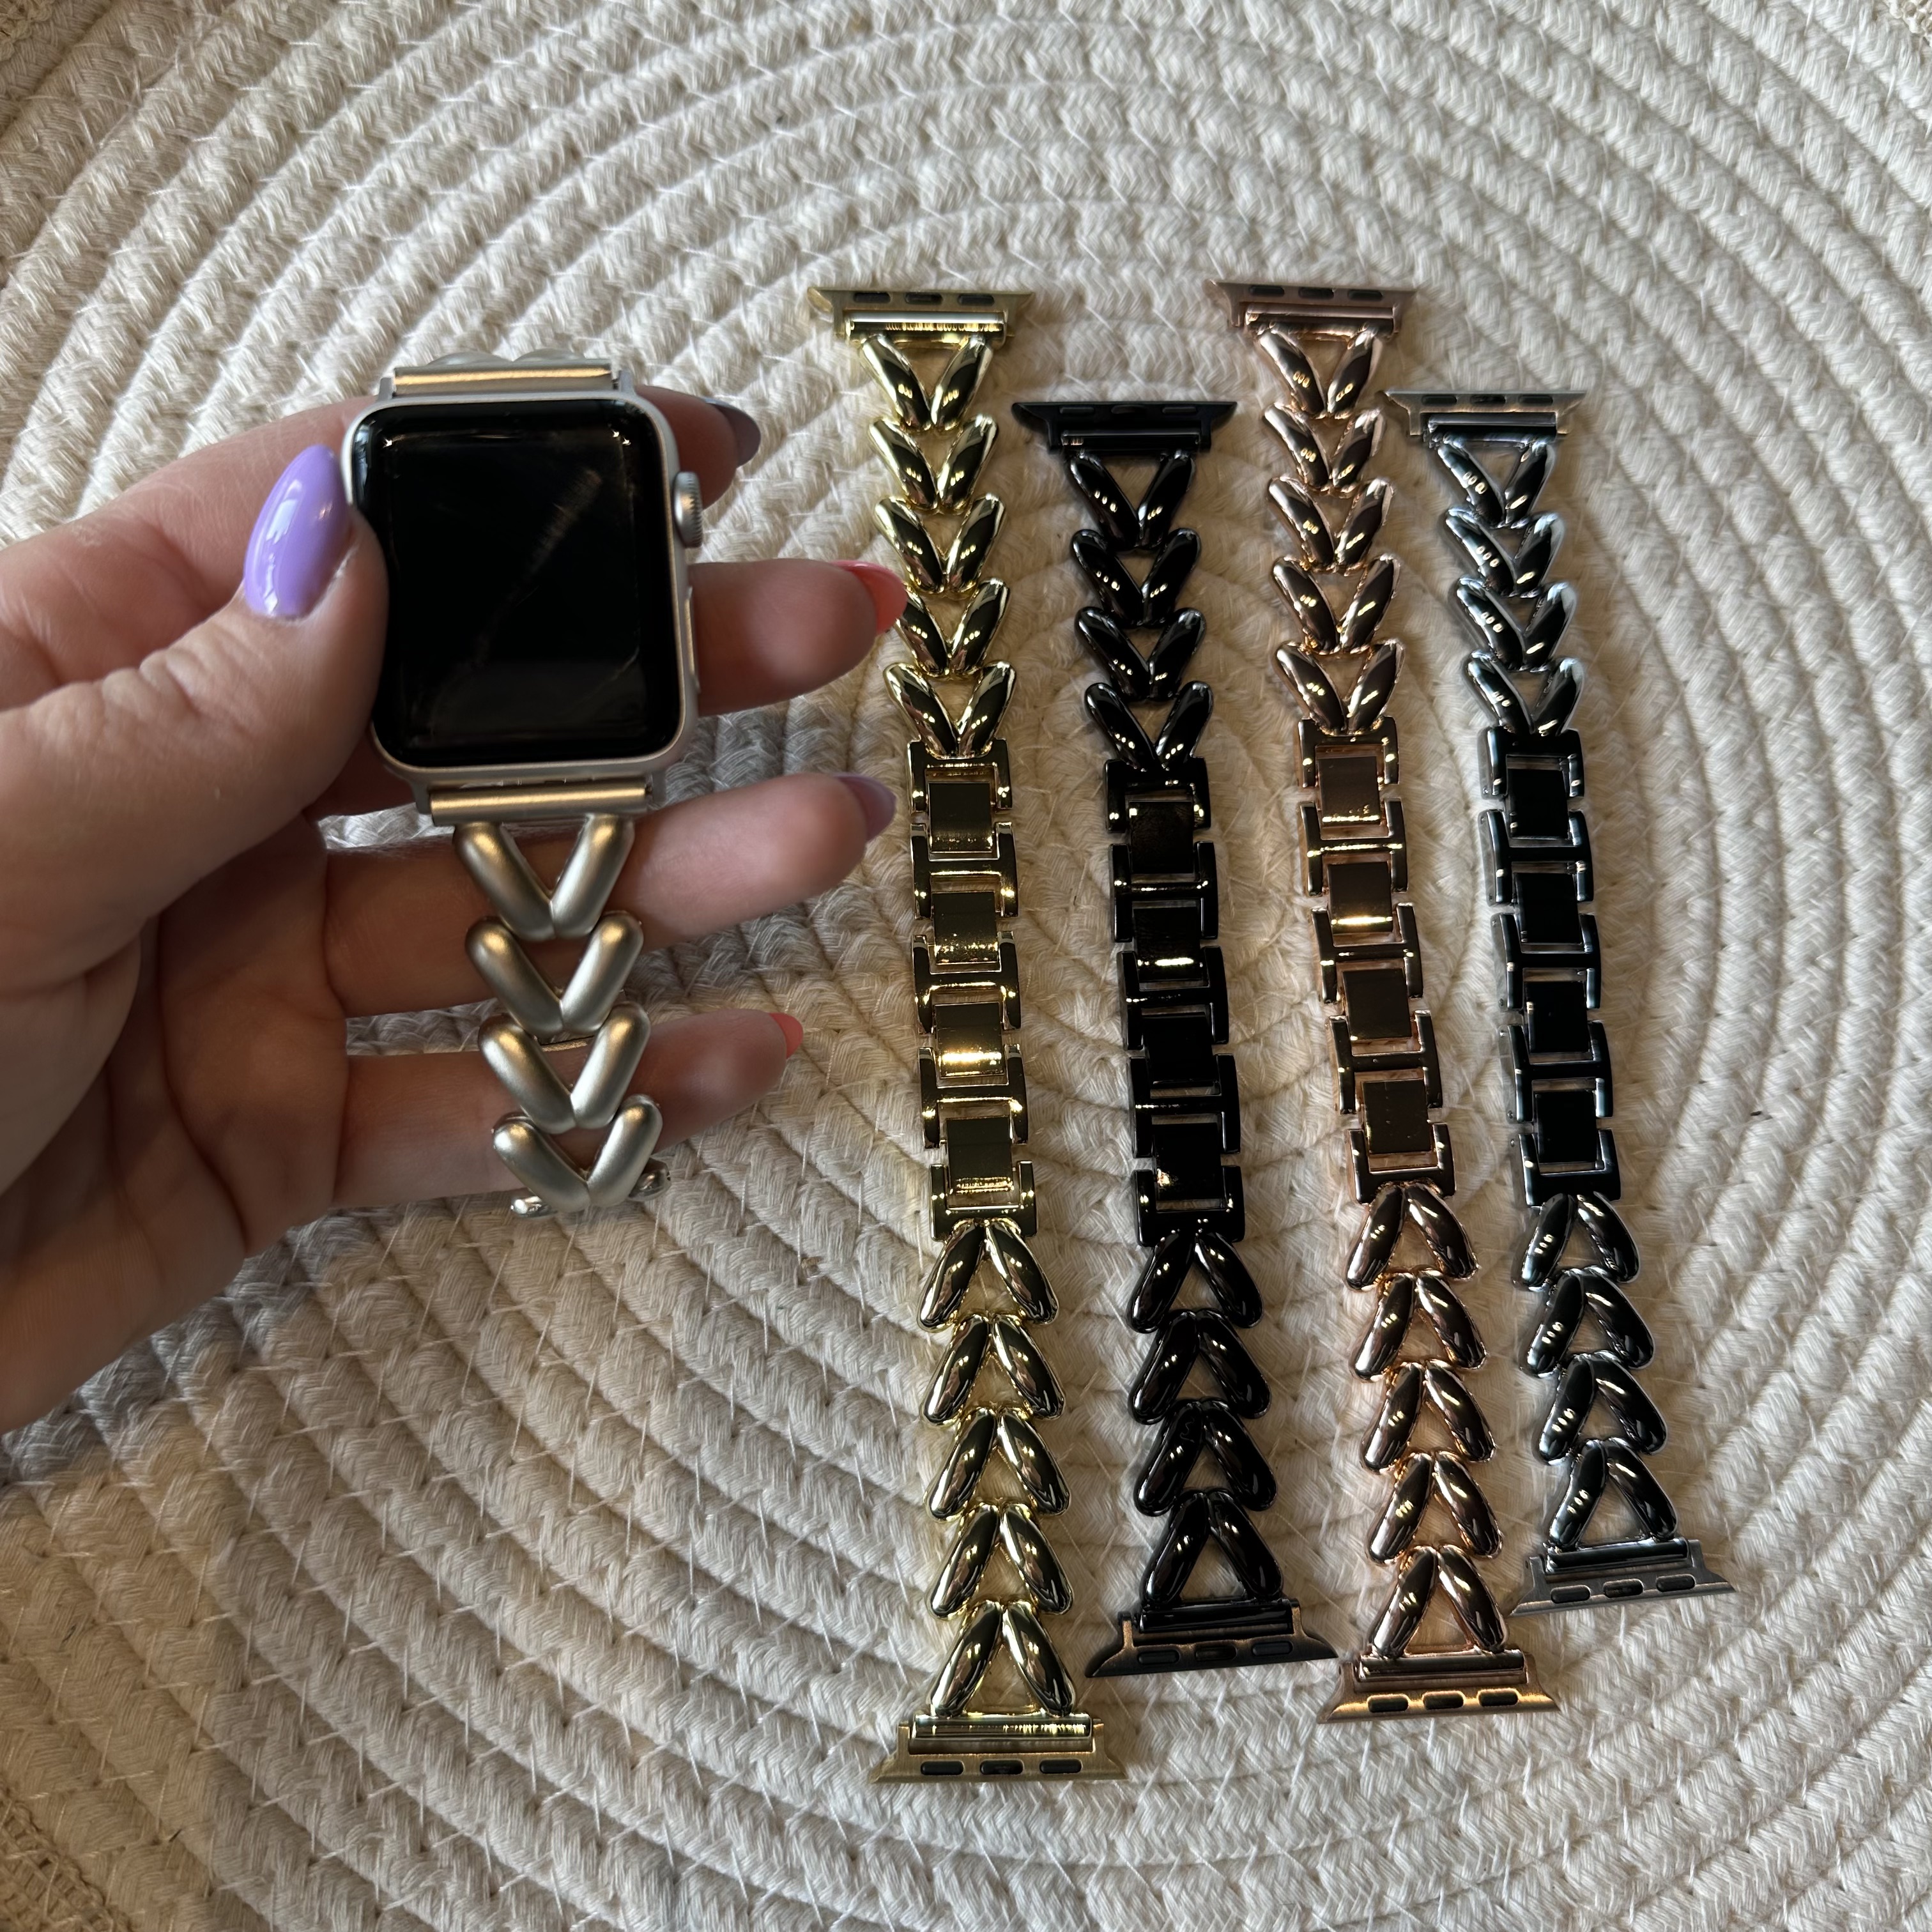 Correa de eslabones de acero con forma de corazón para Apple Watch - Lisa negro